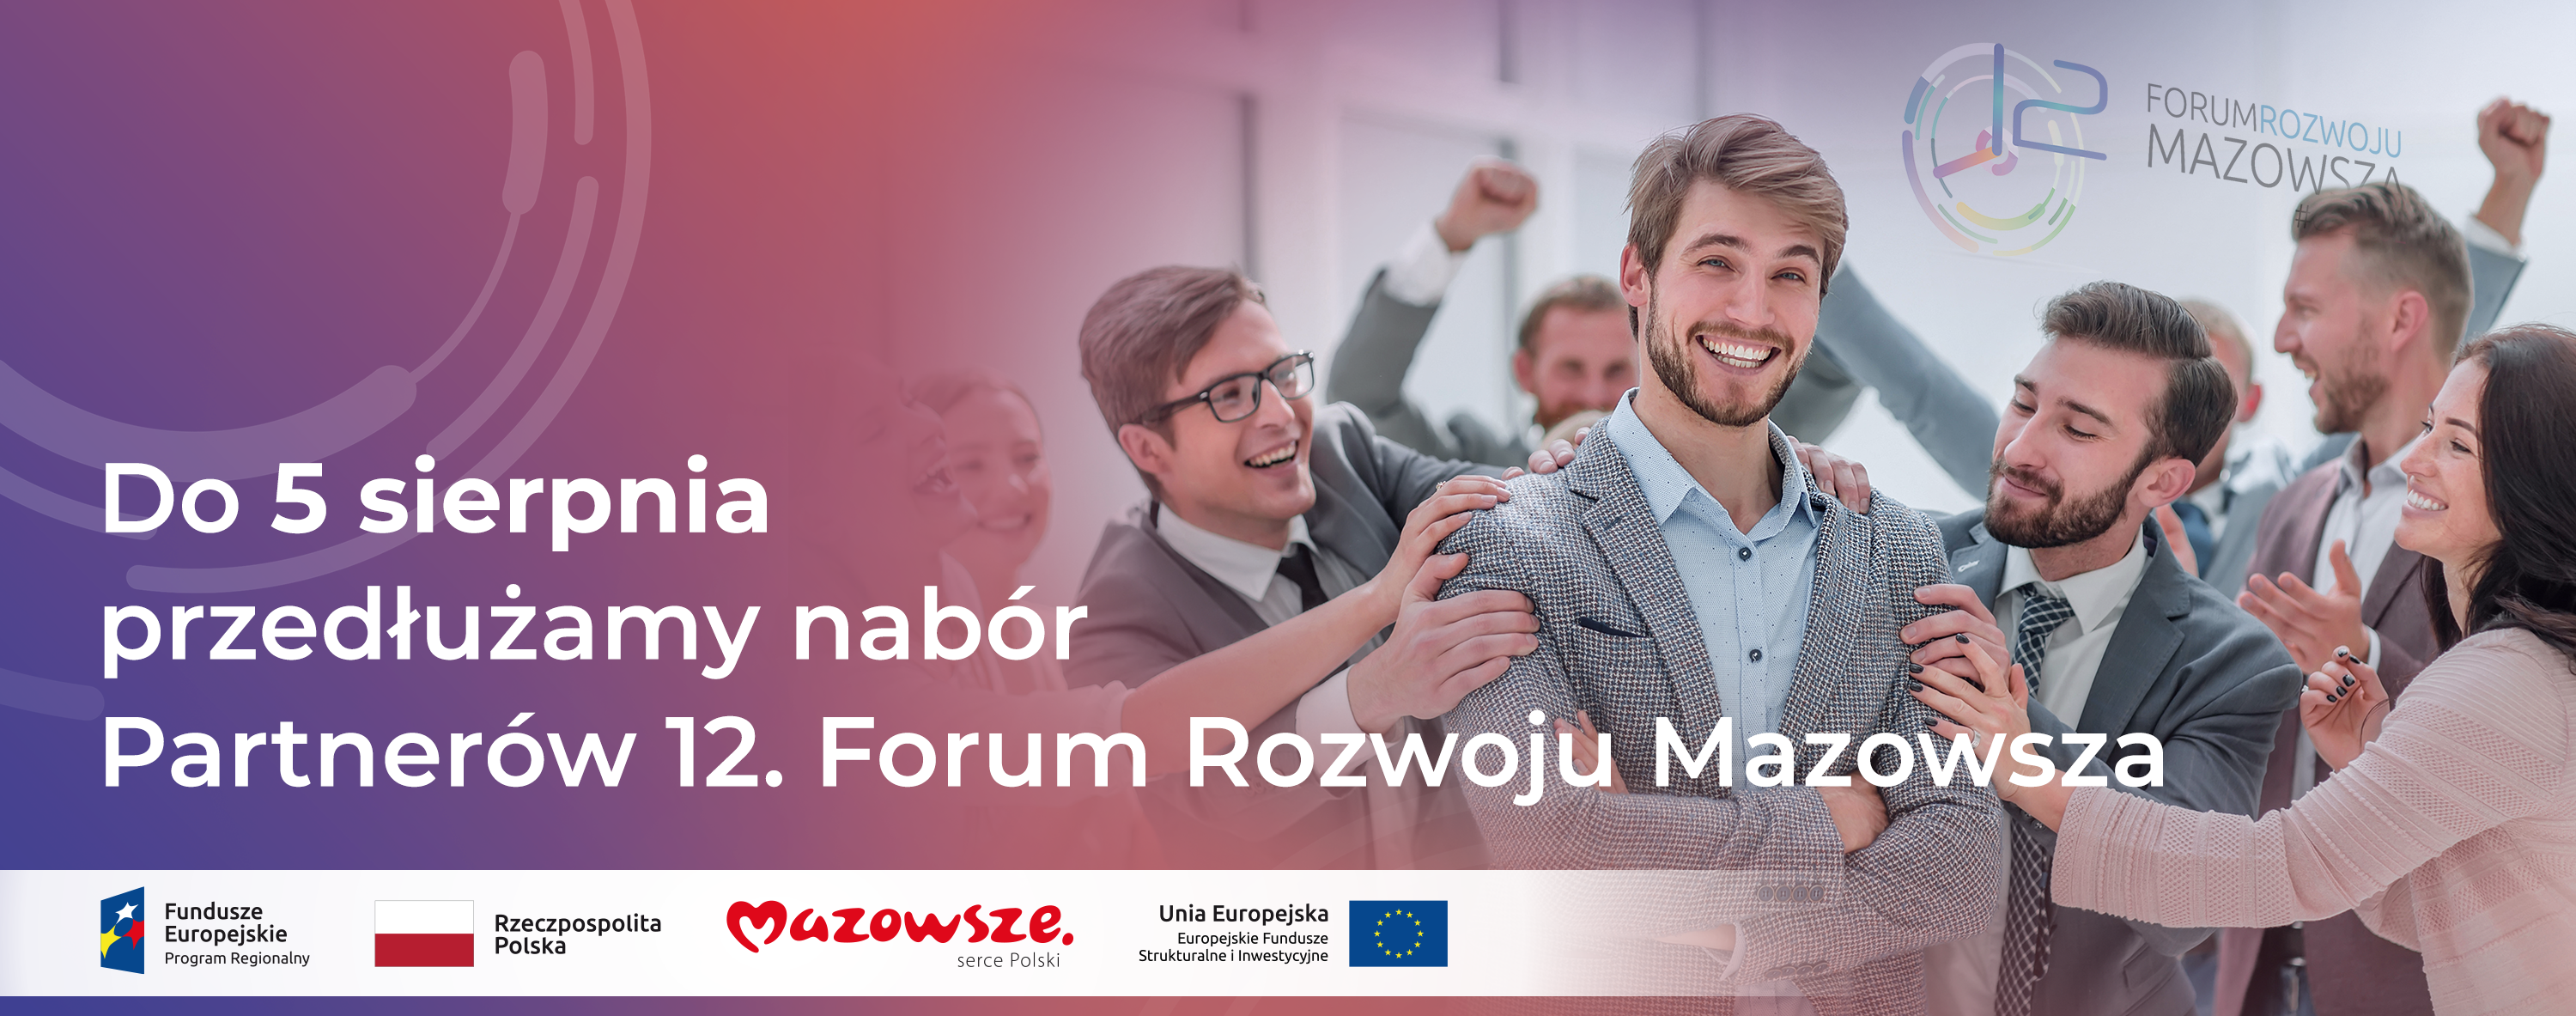 Do 5 sierpnia przedłużamy nabór Partnerów 12. Forum Rozwoju Mazowsza. Na zdjęciu młodzi ludzie w strojach biznesowych.